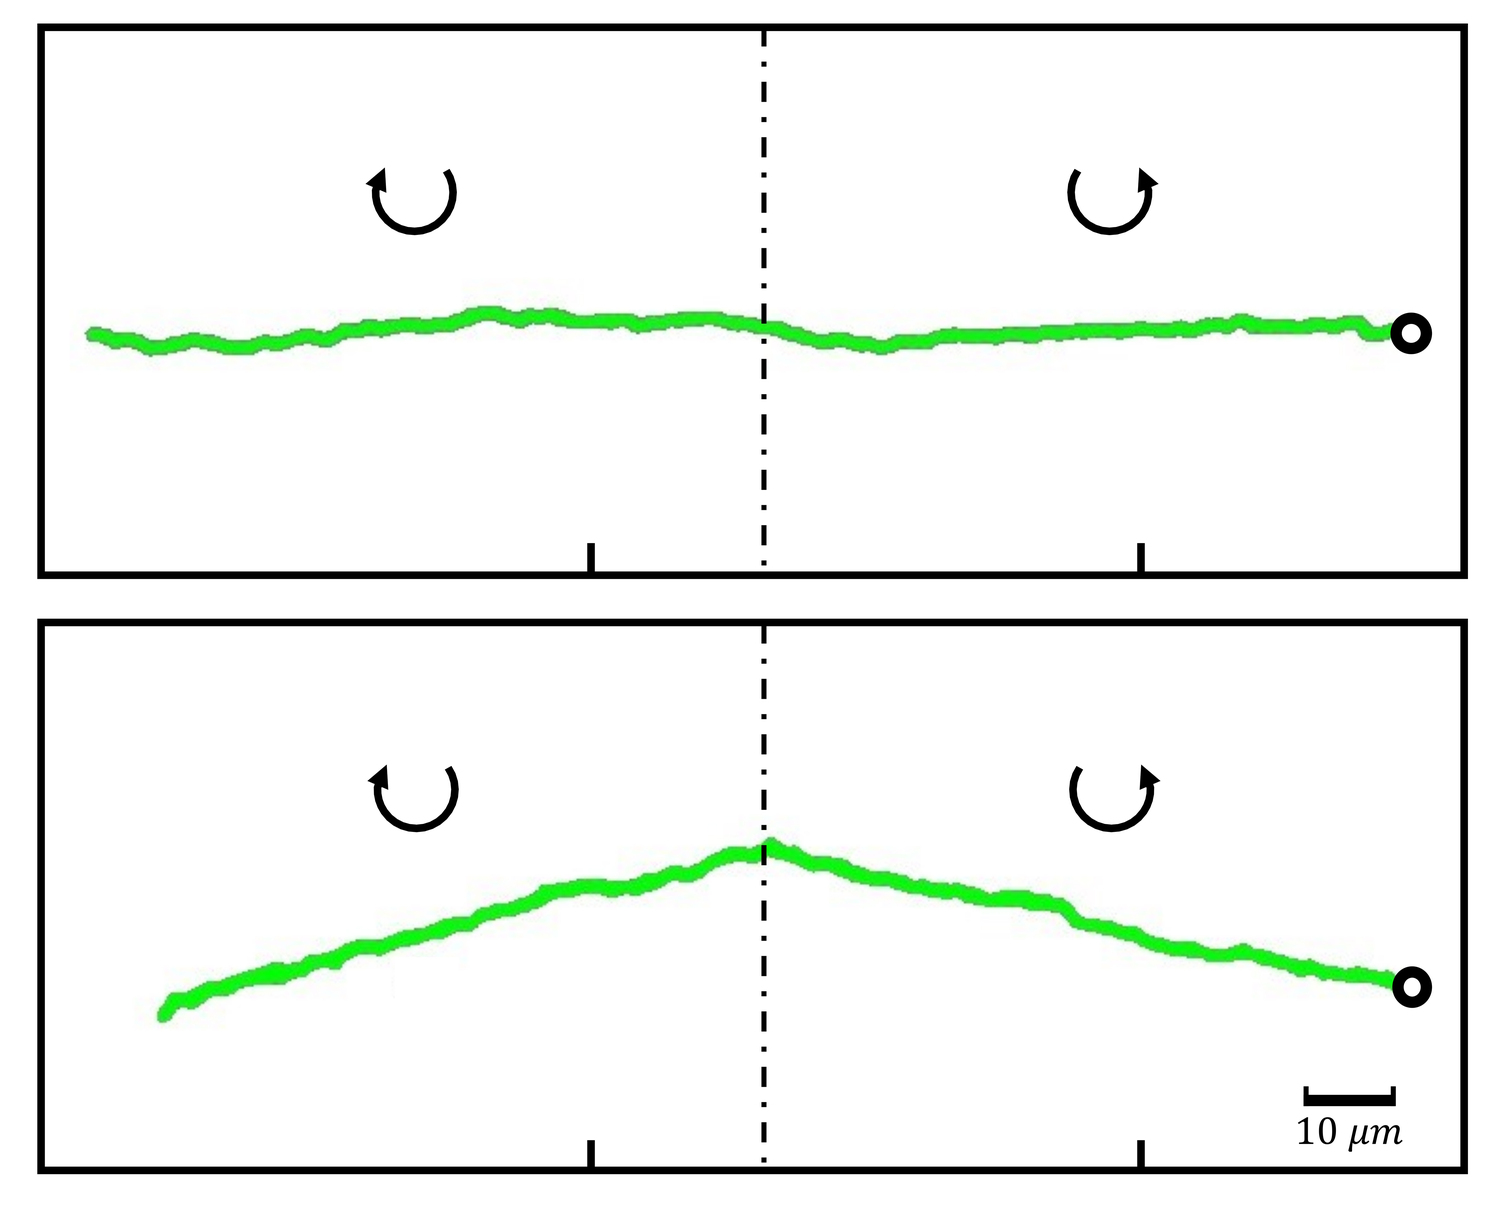 Spur (grüne Linie) eines rotierenden Teilchens, das sich in Wasser (oben) und einer viskoelastischen Flüssigkeit (unten) von links nach rechts bewegt. Im Wasser bewegt sich das Teilchen unabhängig von seiner Drehrichtung konstant nach rechts. In einer viskoelastischen Flüssigkeit führt die Magnus-Kraft zur Abweichung von einer geraden Bahn.